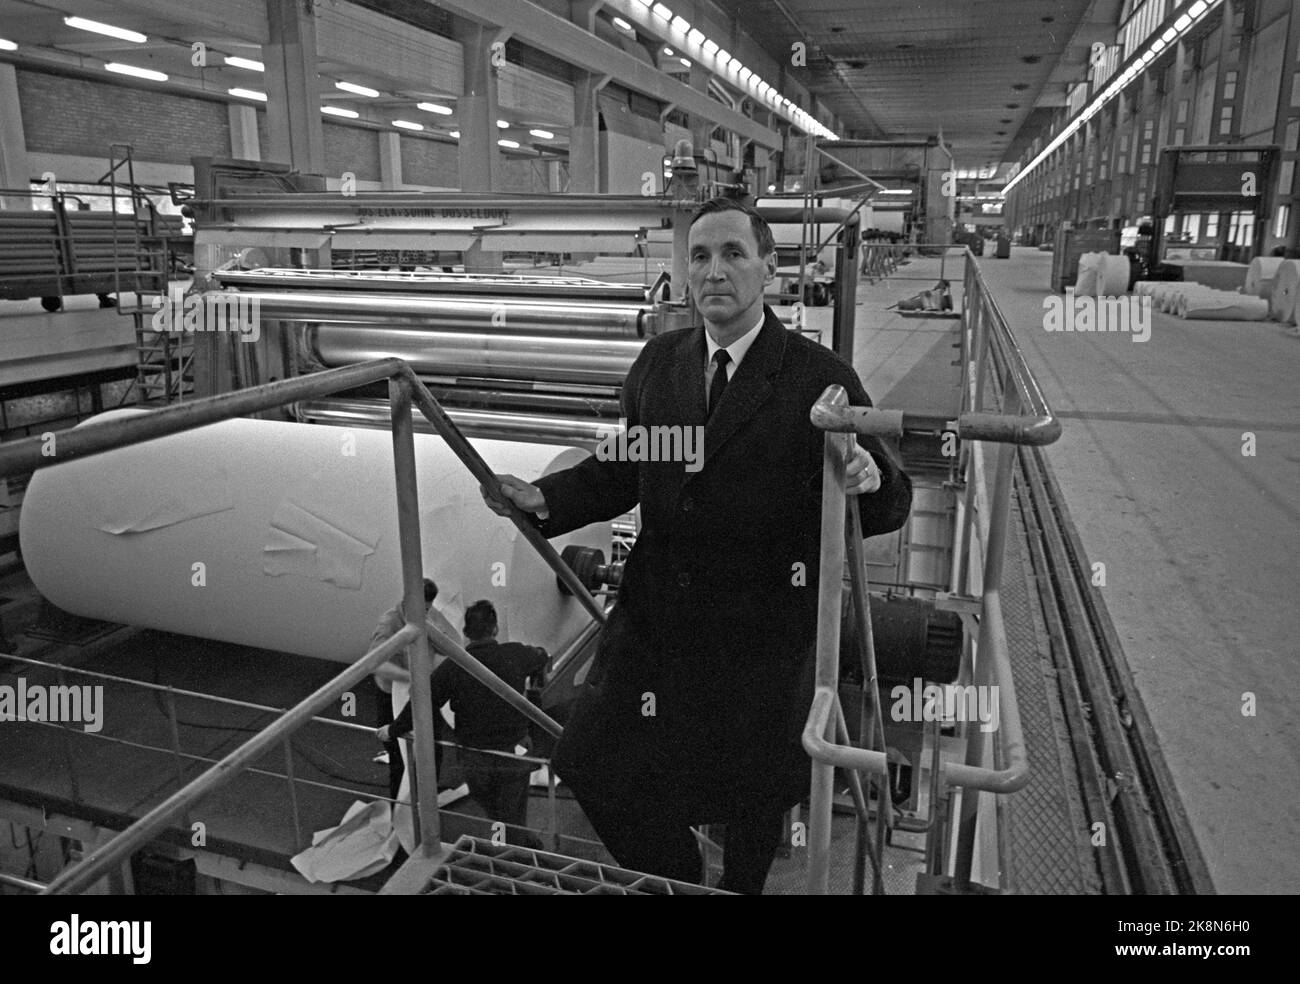 Halden décembre 1966 l'ancien combattant Gunnar Sønsteby, chef du gang d'Oslo, est mentionné dans un livre anglais sur le mouvement de résistance en Europe occidentale occupée par l'Allemagne comme "Real Life James Bond". Sønsteby occupe actuellement le poste de directeur des ventes à Saugbruksforeningen. Ici, il est en déplacement dans la nouvelle usine pour la production de papier du Saugbruksforening. Photo: Aage Storløkken / actuel / NTB Banque D'Images